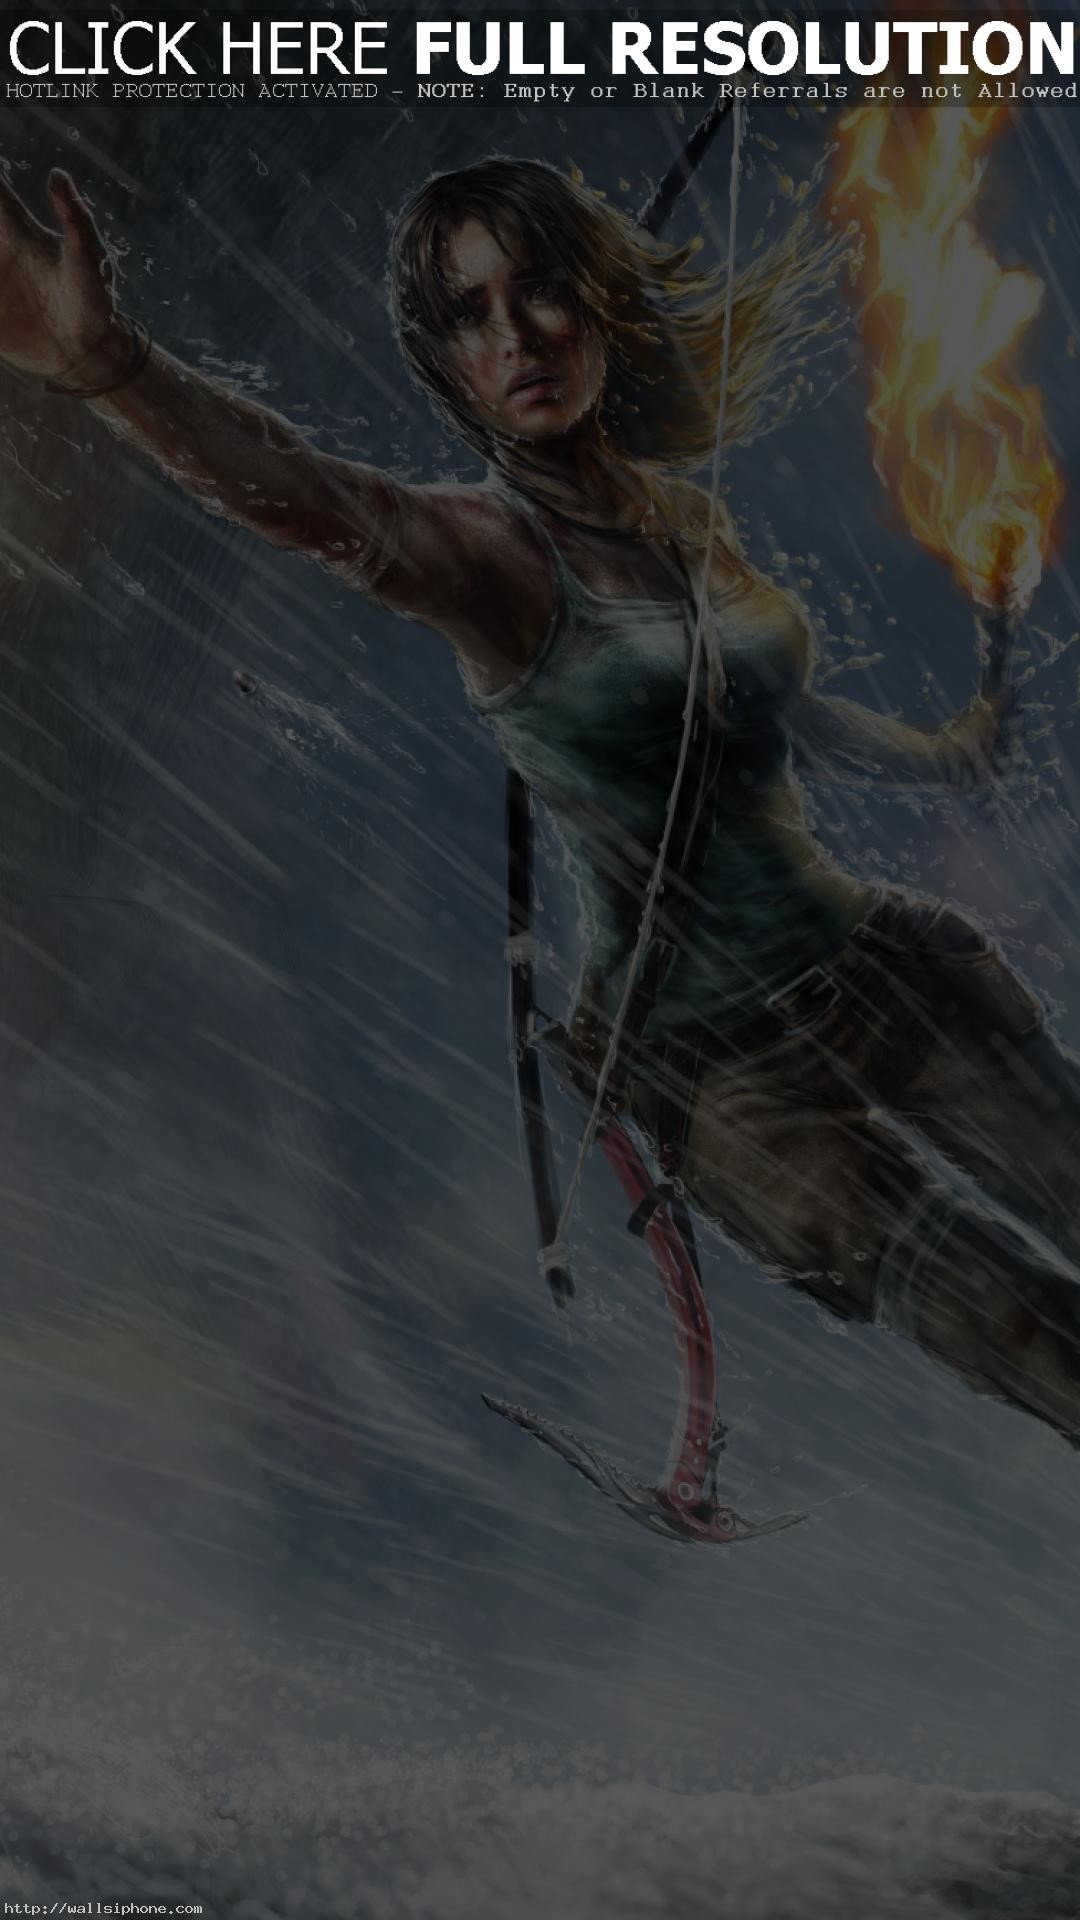 1080x1920 Lara Croft Tomb Raider iPhone wallpaper